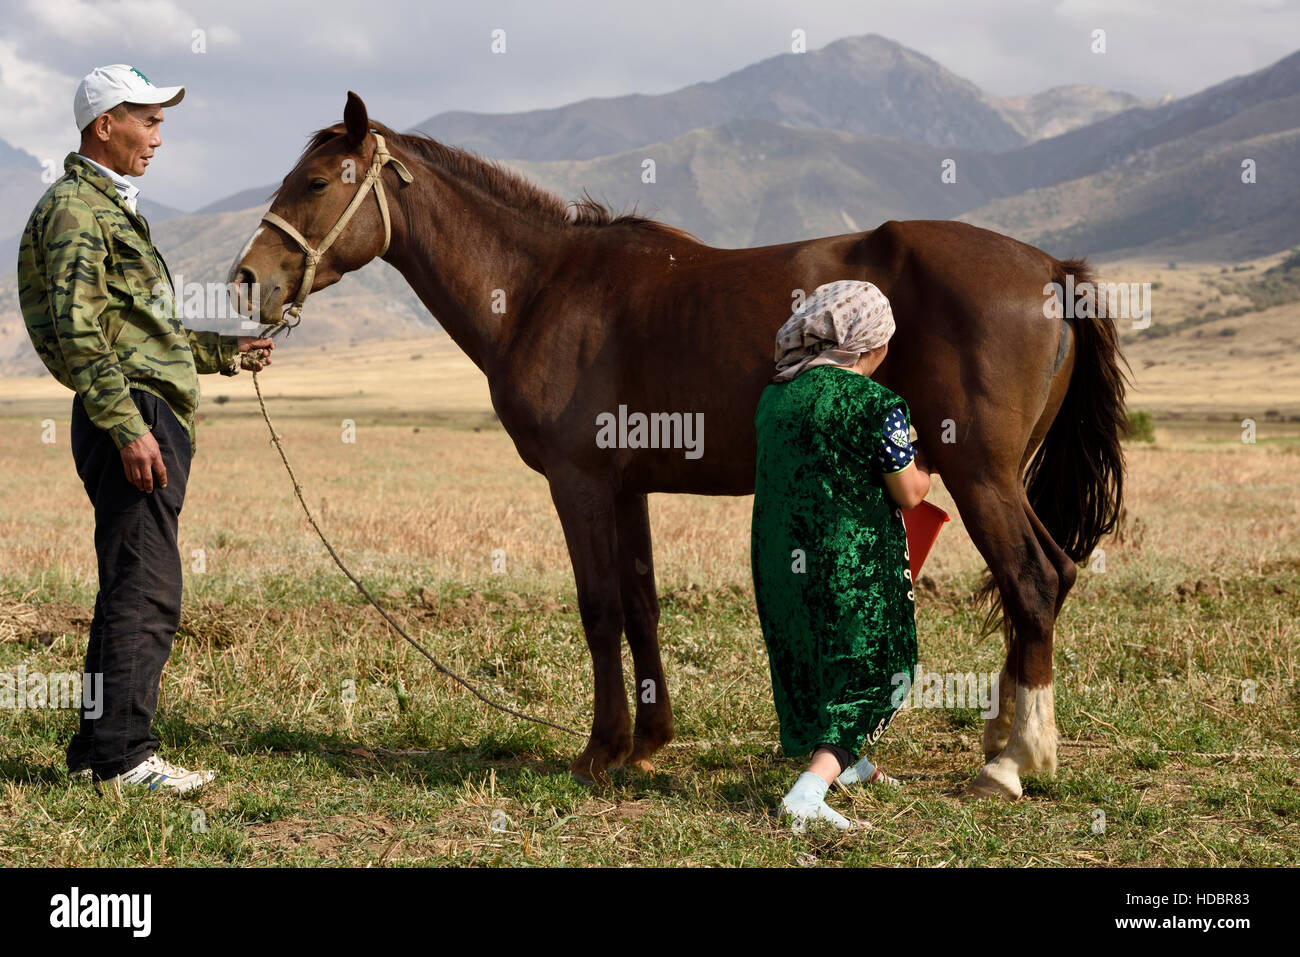 Mari holding mare tandis que les laits épouse le cheval dans la Réserve Naturelle Aksu-Zhabagly Kazakhstan Banque D'Images